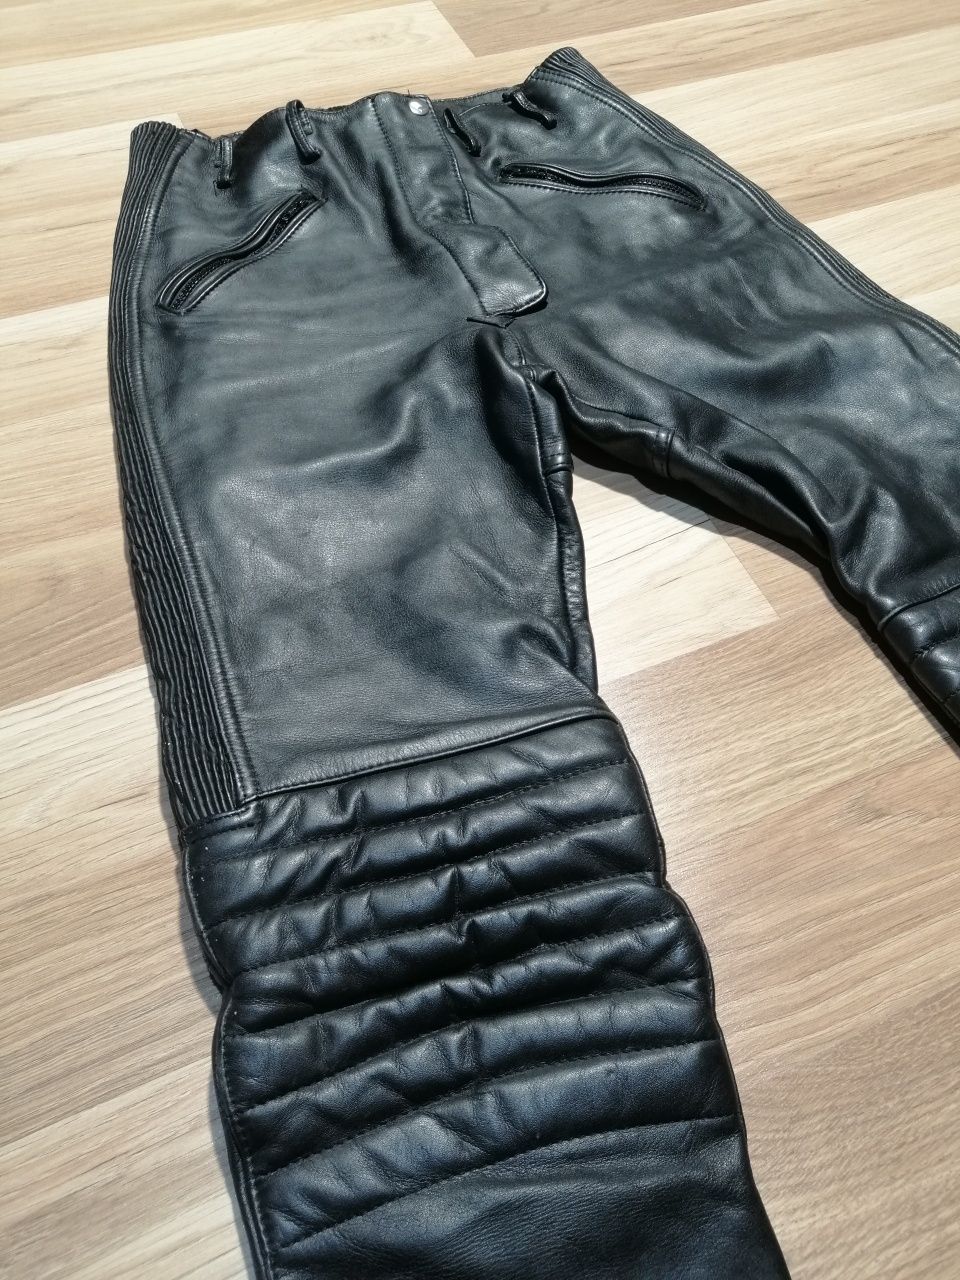 Spodnie damskie skórzane motocyklowe marki Krawehl Leder L